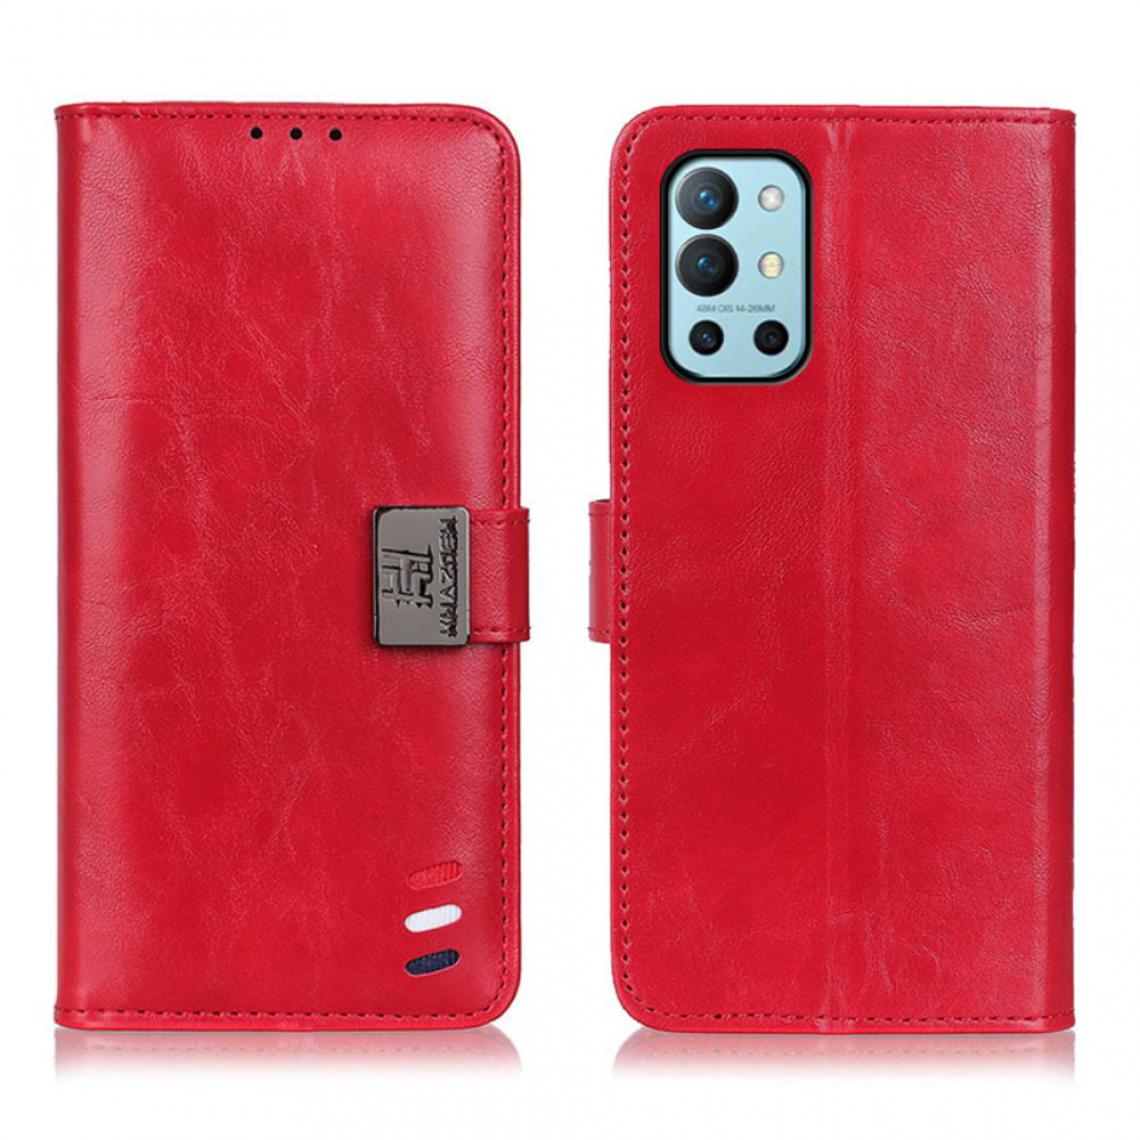 Other - Etui en PU Tresse tricolore avec support rouge pour votre OnePlus 9R - Coque, étui smartphone